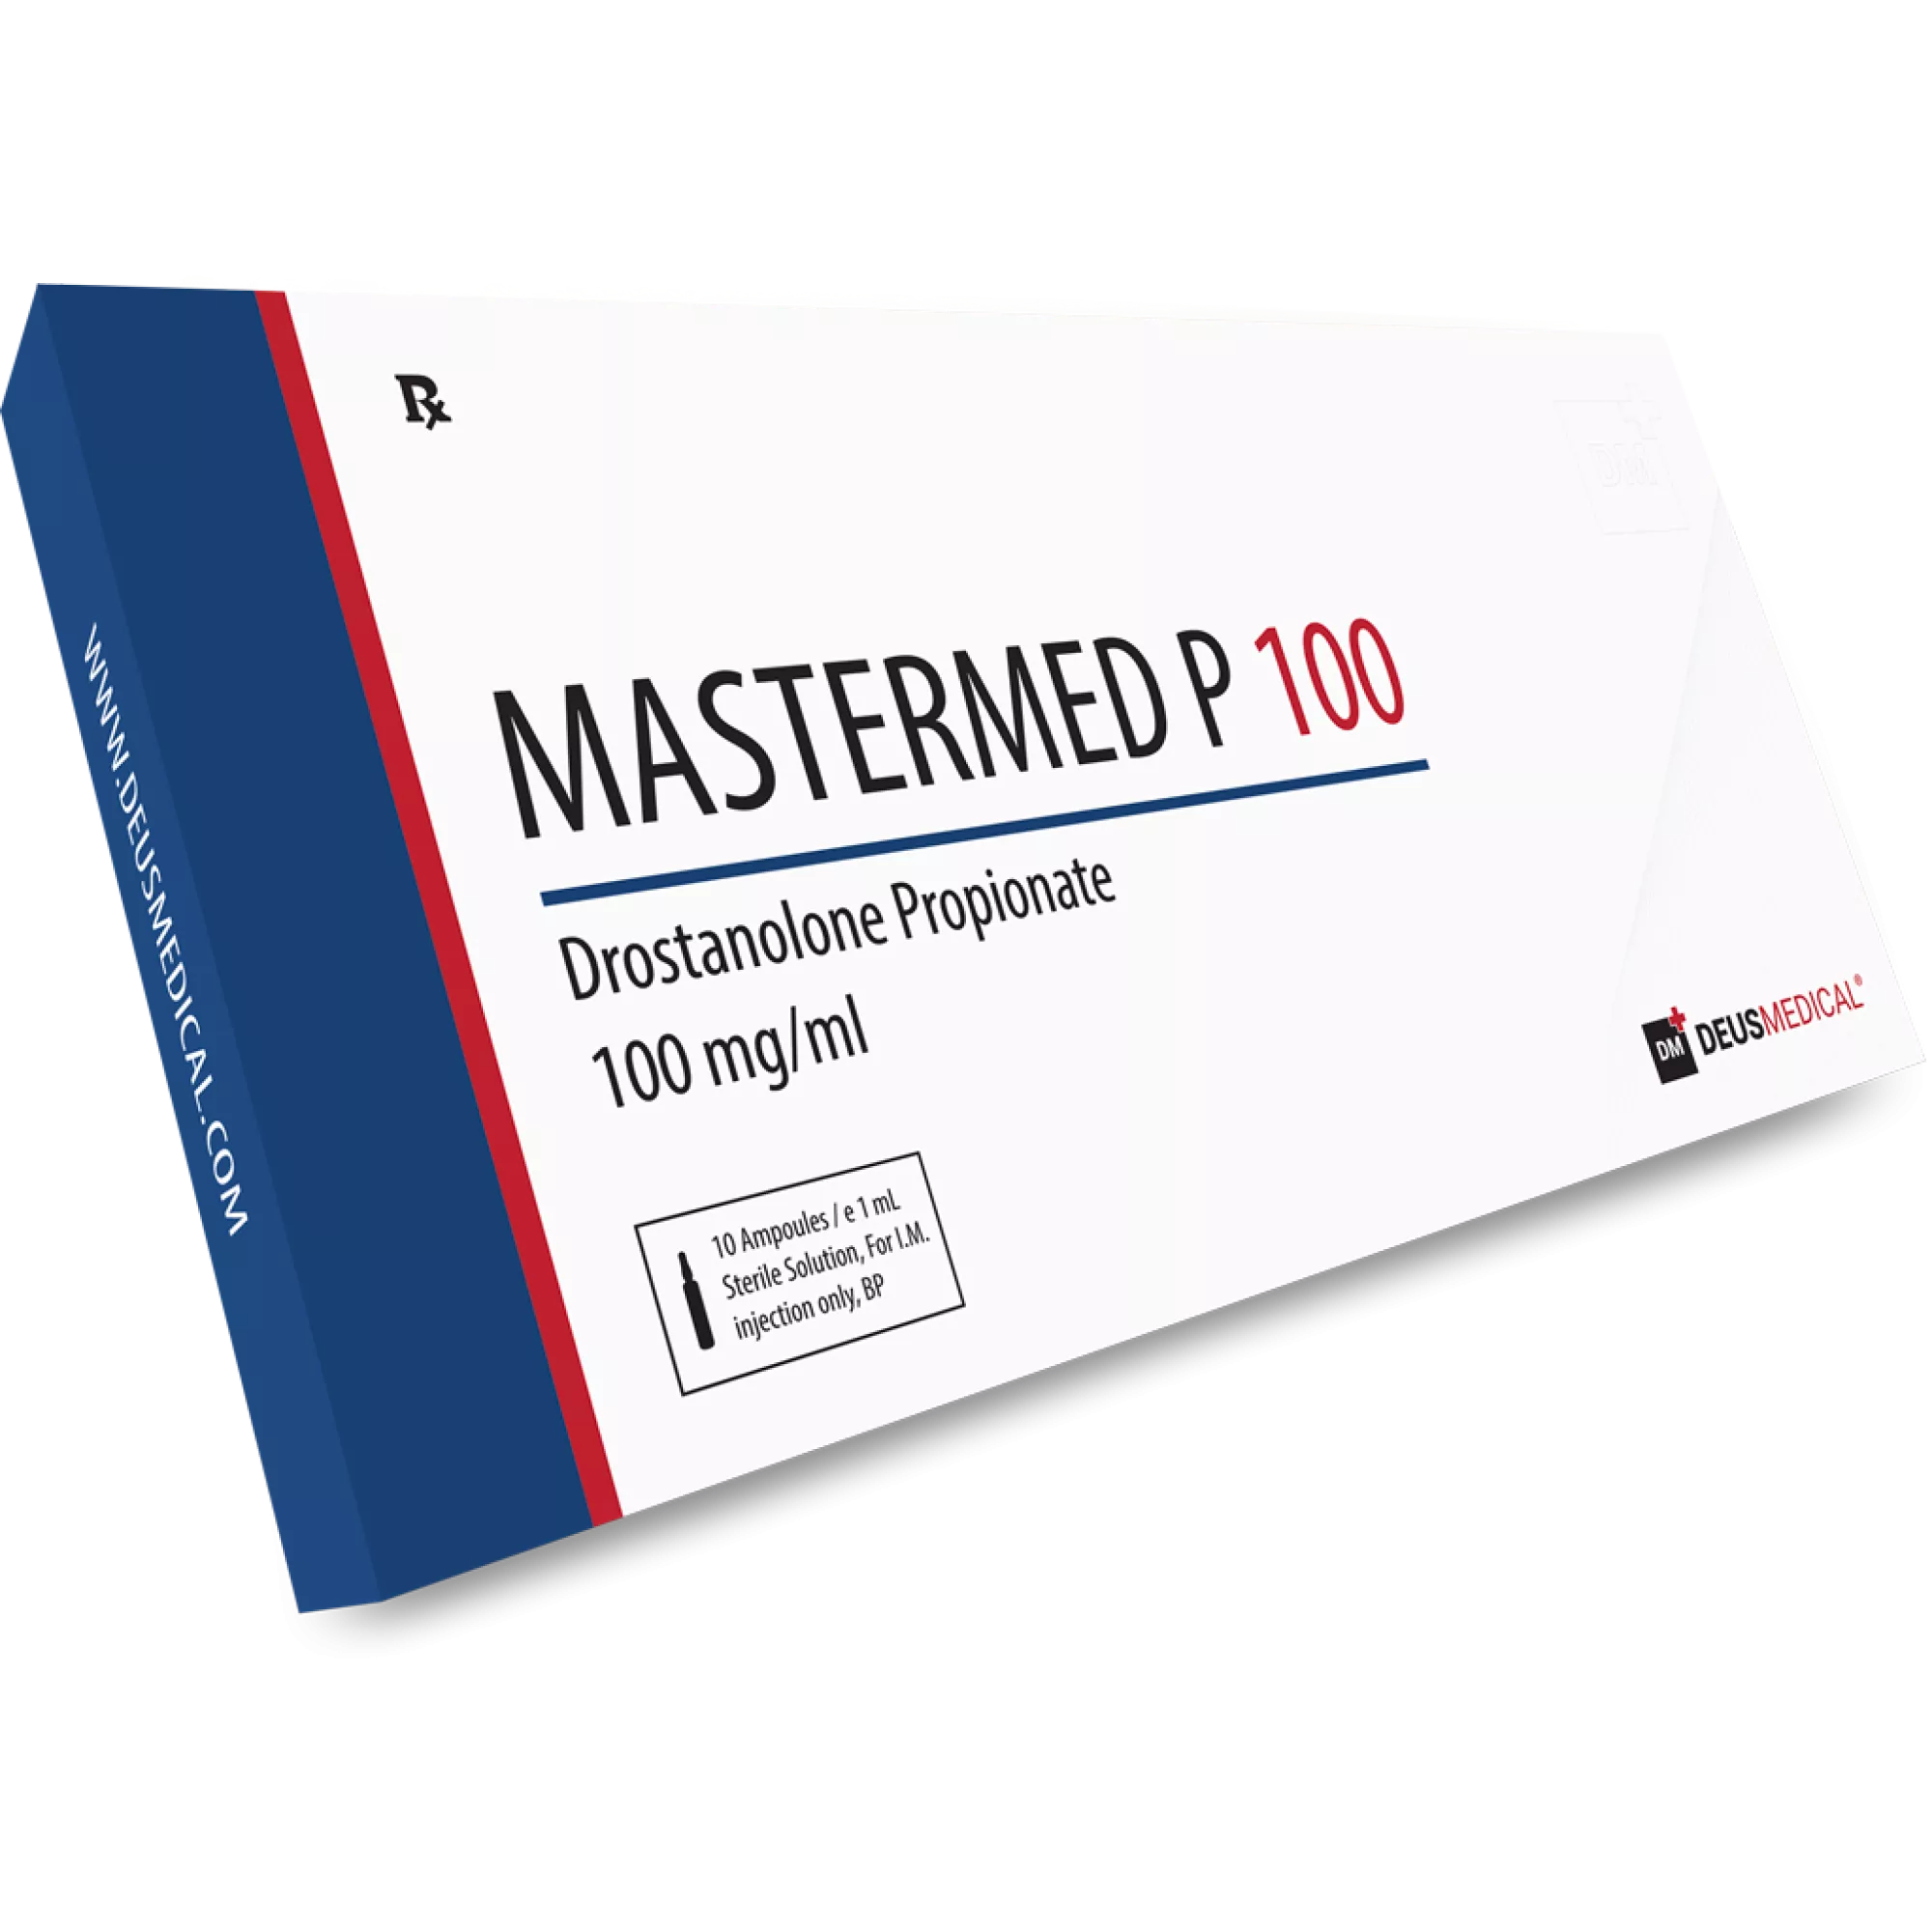 MASTERMED P 100 (Drostanolon Propionat), Deus Medical, Kaufen Sie Steroide Online - www.deuspower.shop